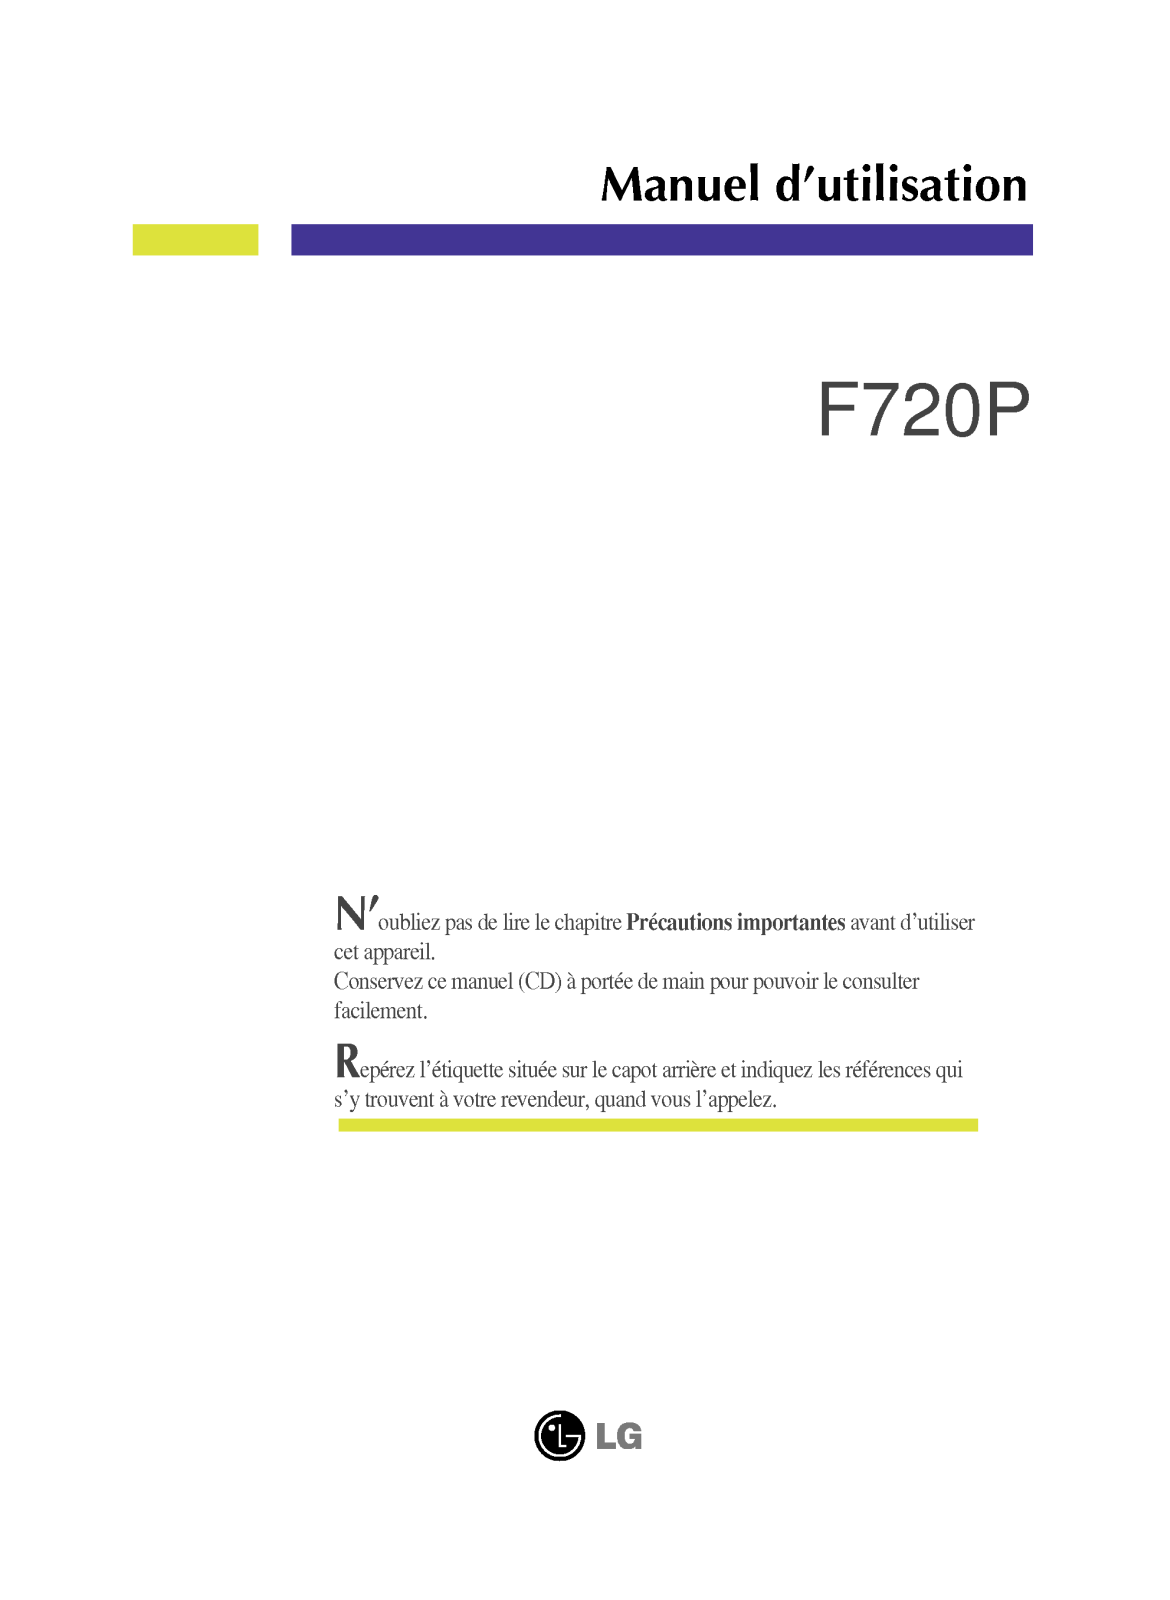 LG F720P User Manual